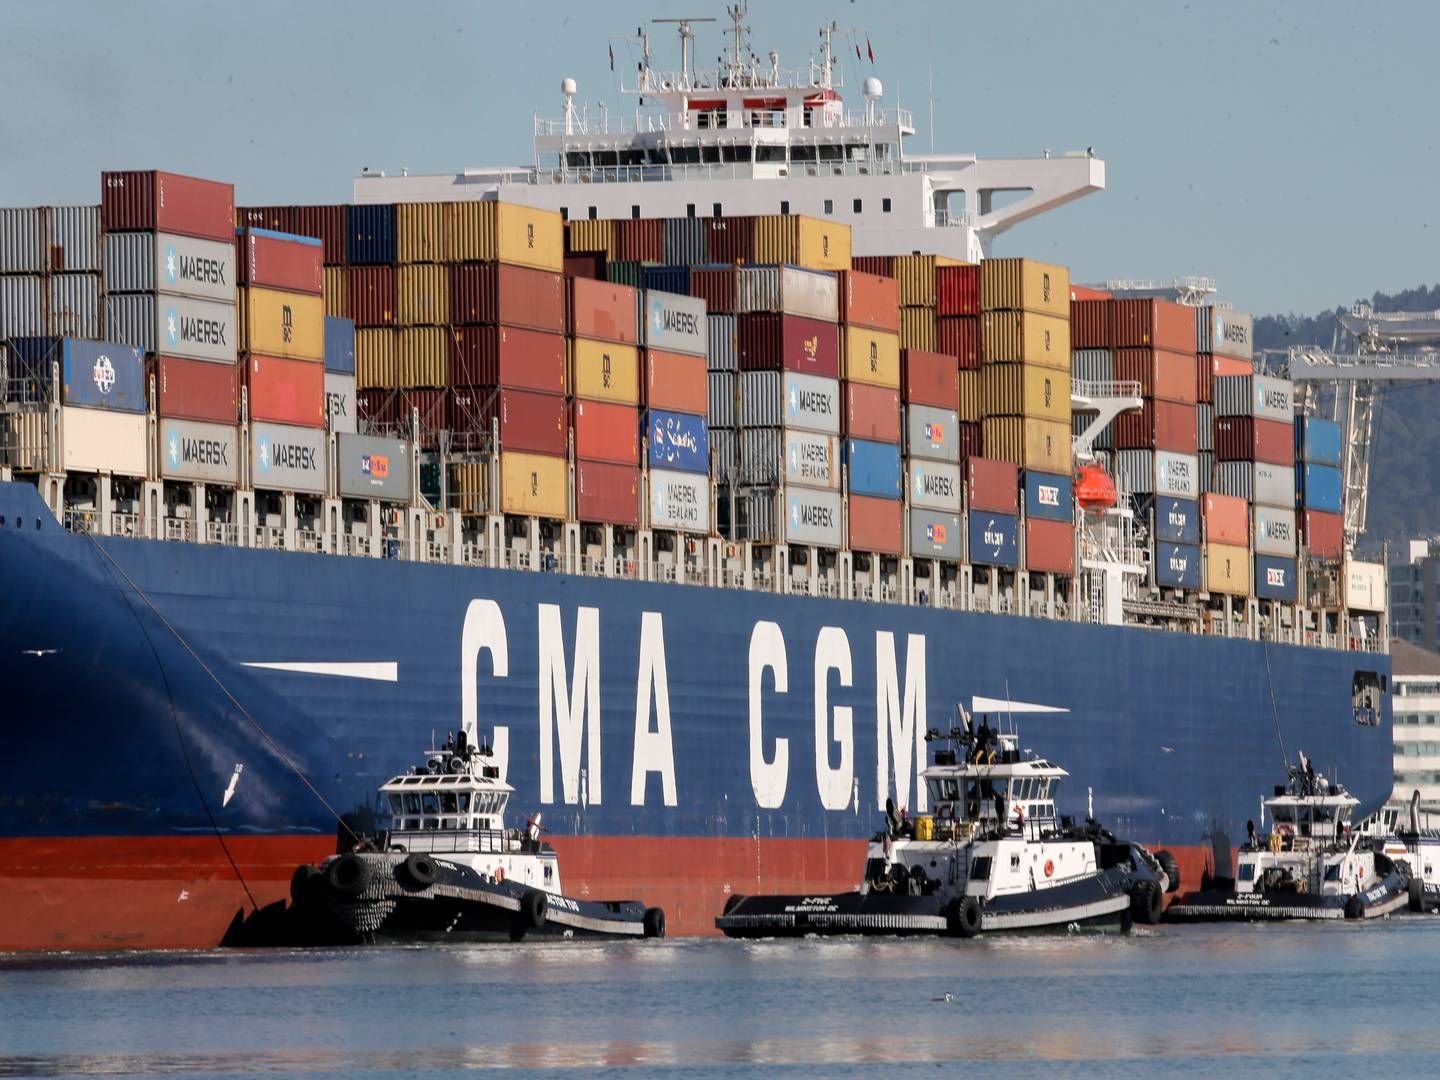 Opkøbet af Bolloré Logistics er nu tæt på at falde endeligt på plads for den franske shippingkoncern CMA CGM. | Foto: Michael Macor/AP/Ritzau Scanpix